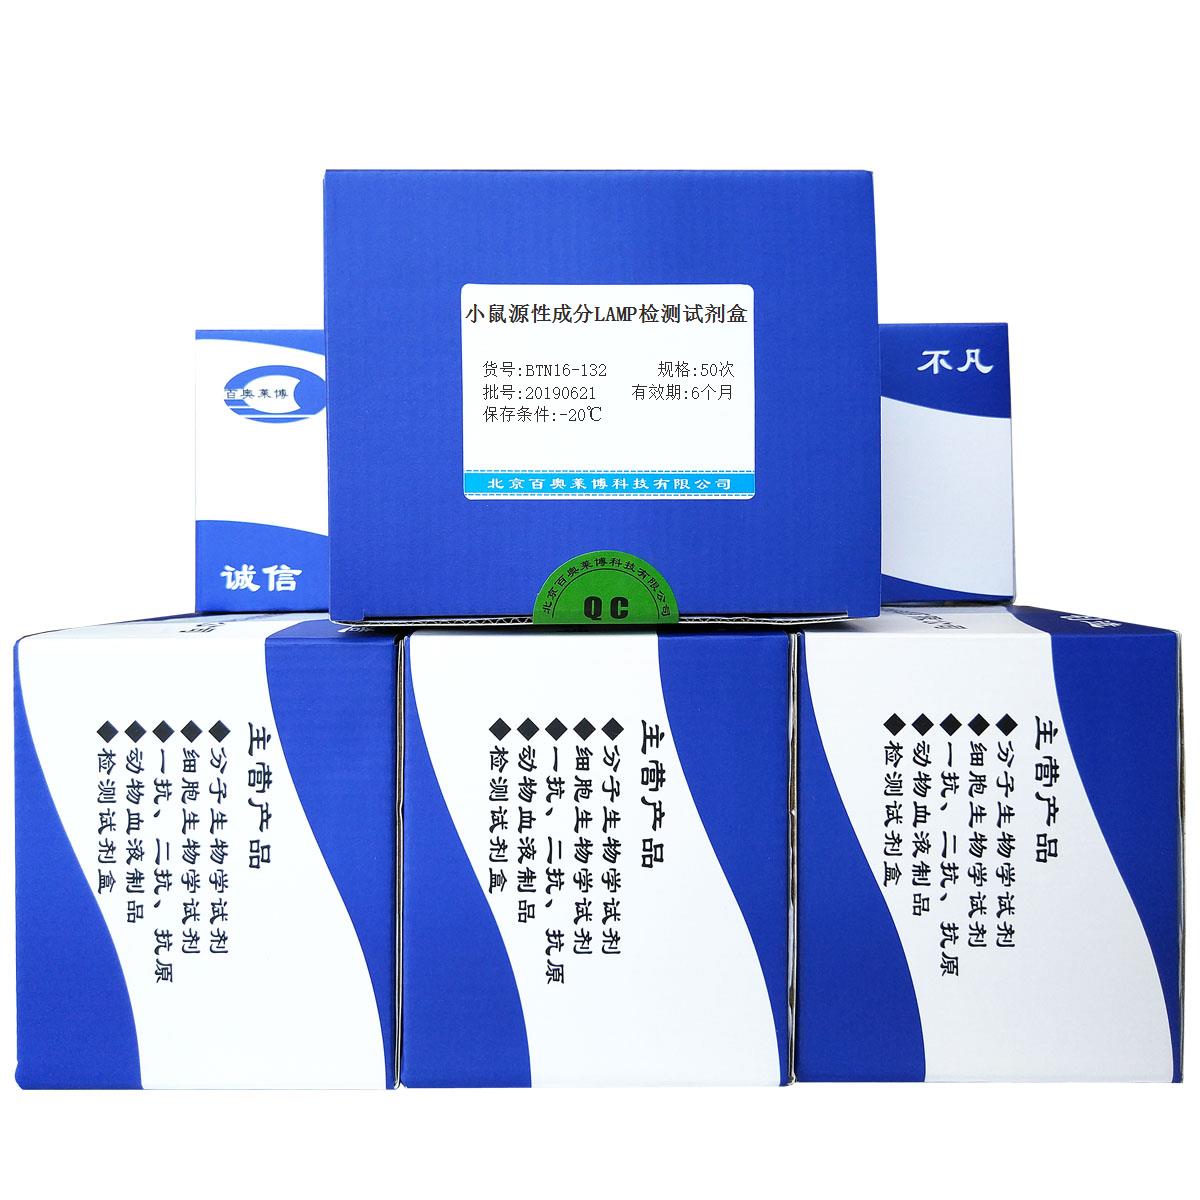 小鼠源性成分LAMP检测试剂盒北京价格